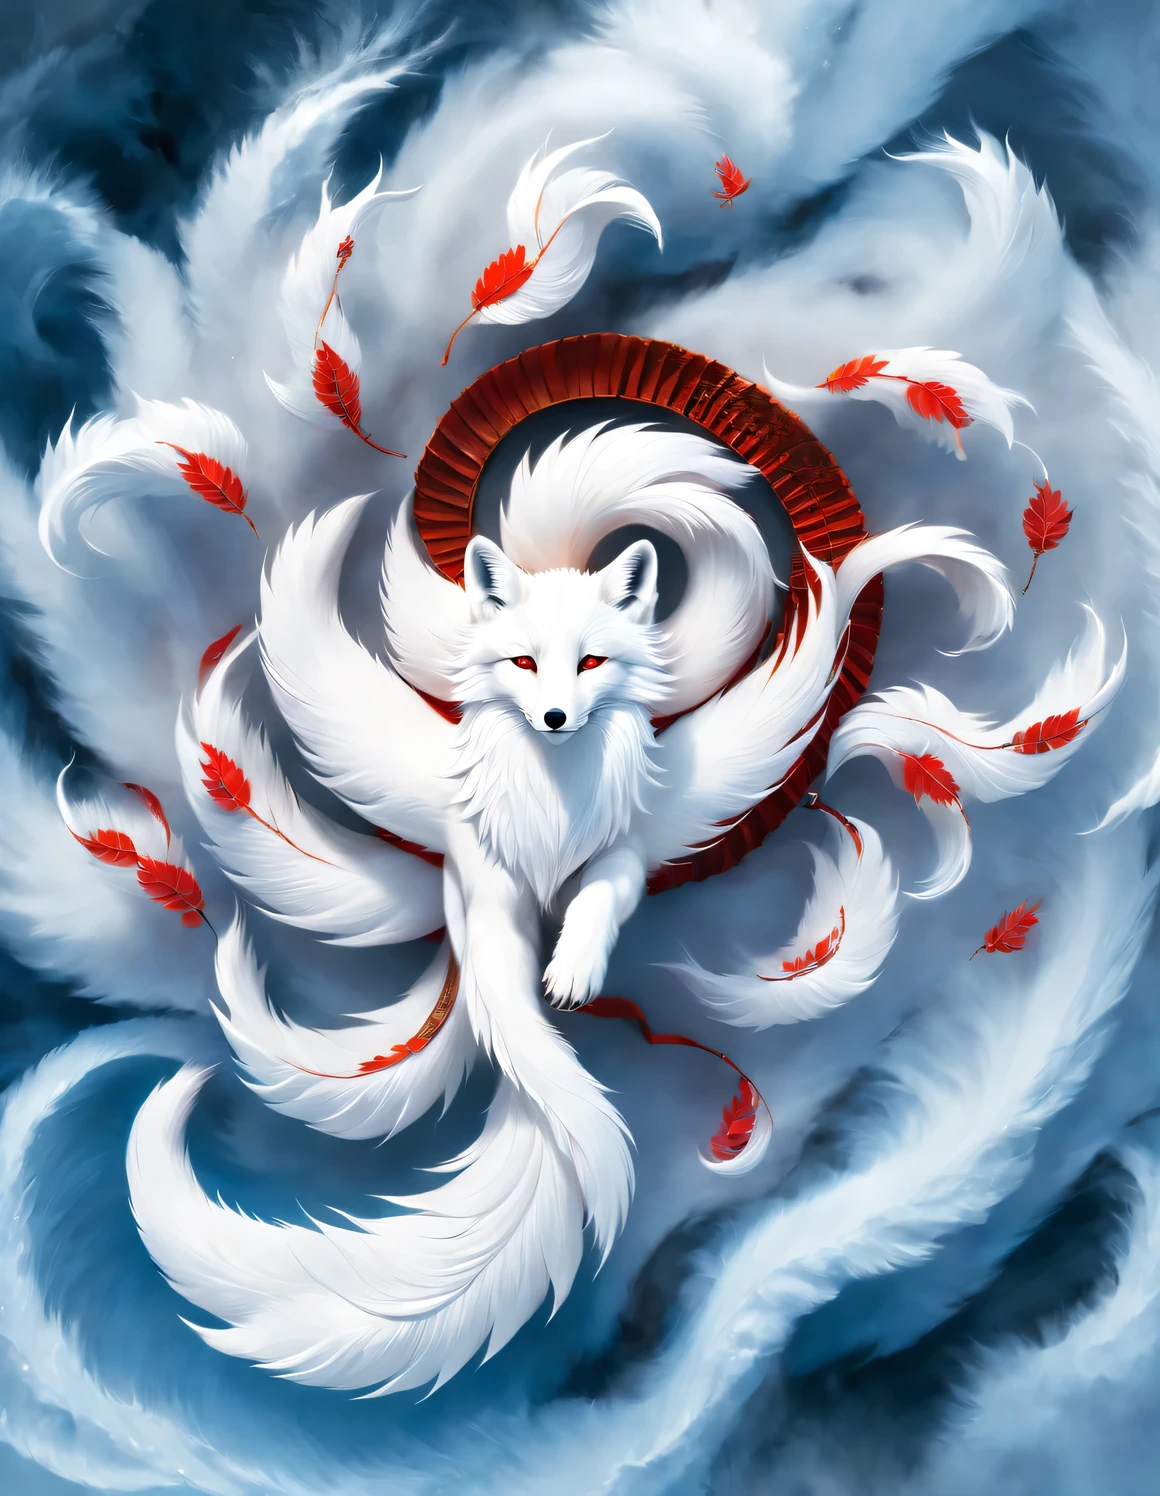 (A white fox with nine red tails in ancient 中國神話), (整個身體側向), (山海經, 美麗的長髮, 神秘的傳說, 中國神話, (藍眼睛), (九條紅尾巴圍著狐狸轉), 透明的狐狸爪子, 概念藝術, 插圖, 8K, 焦點平滑清晰,